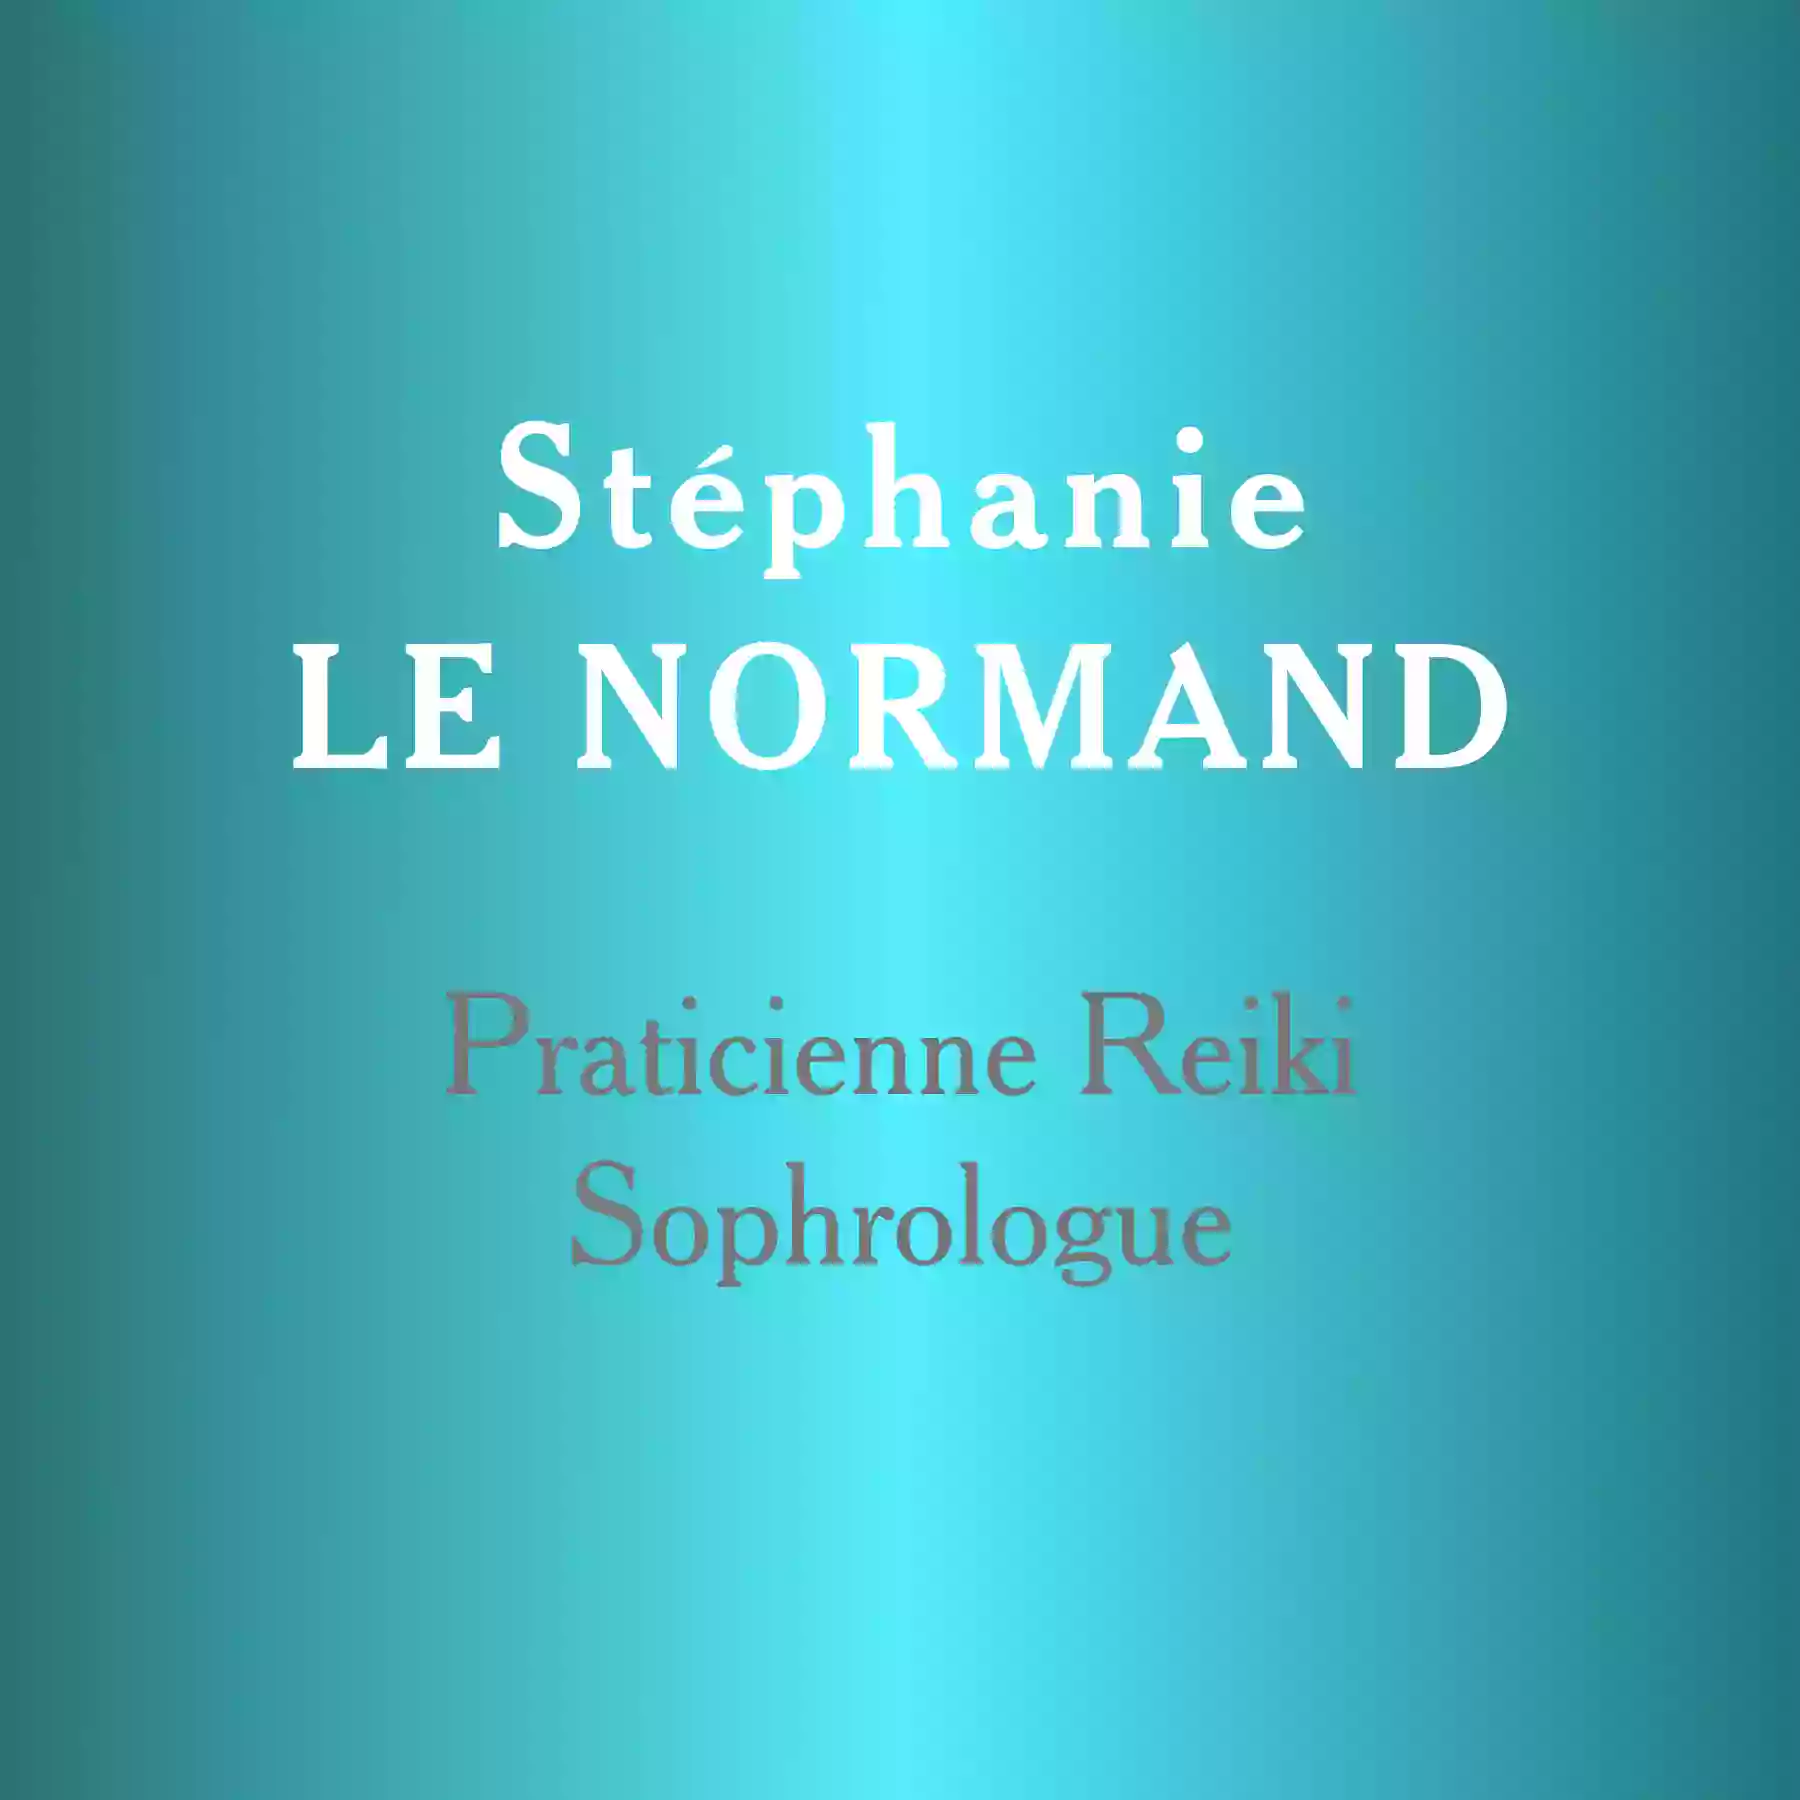 Stéphanie LE NORMAND